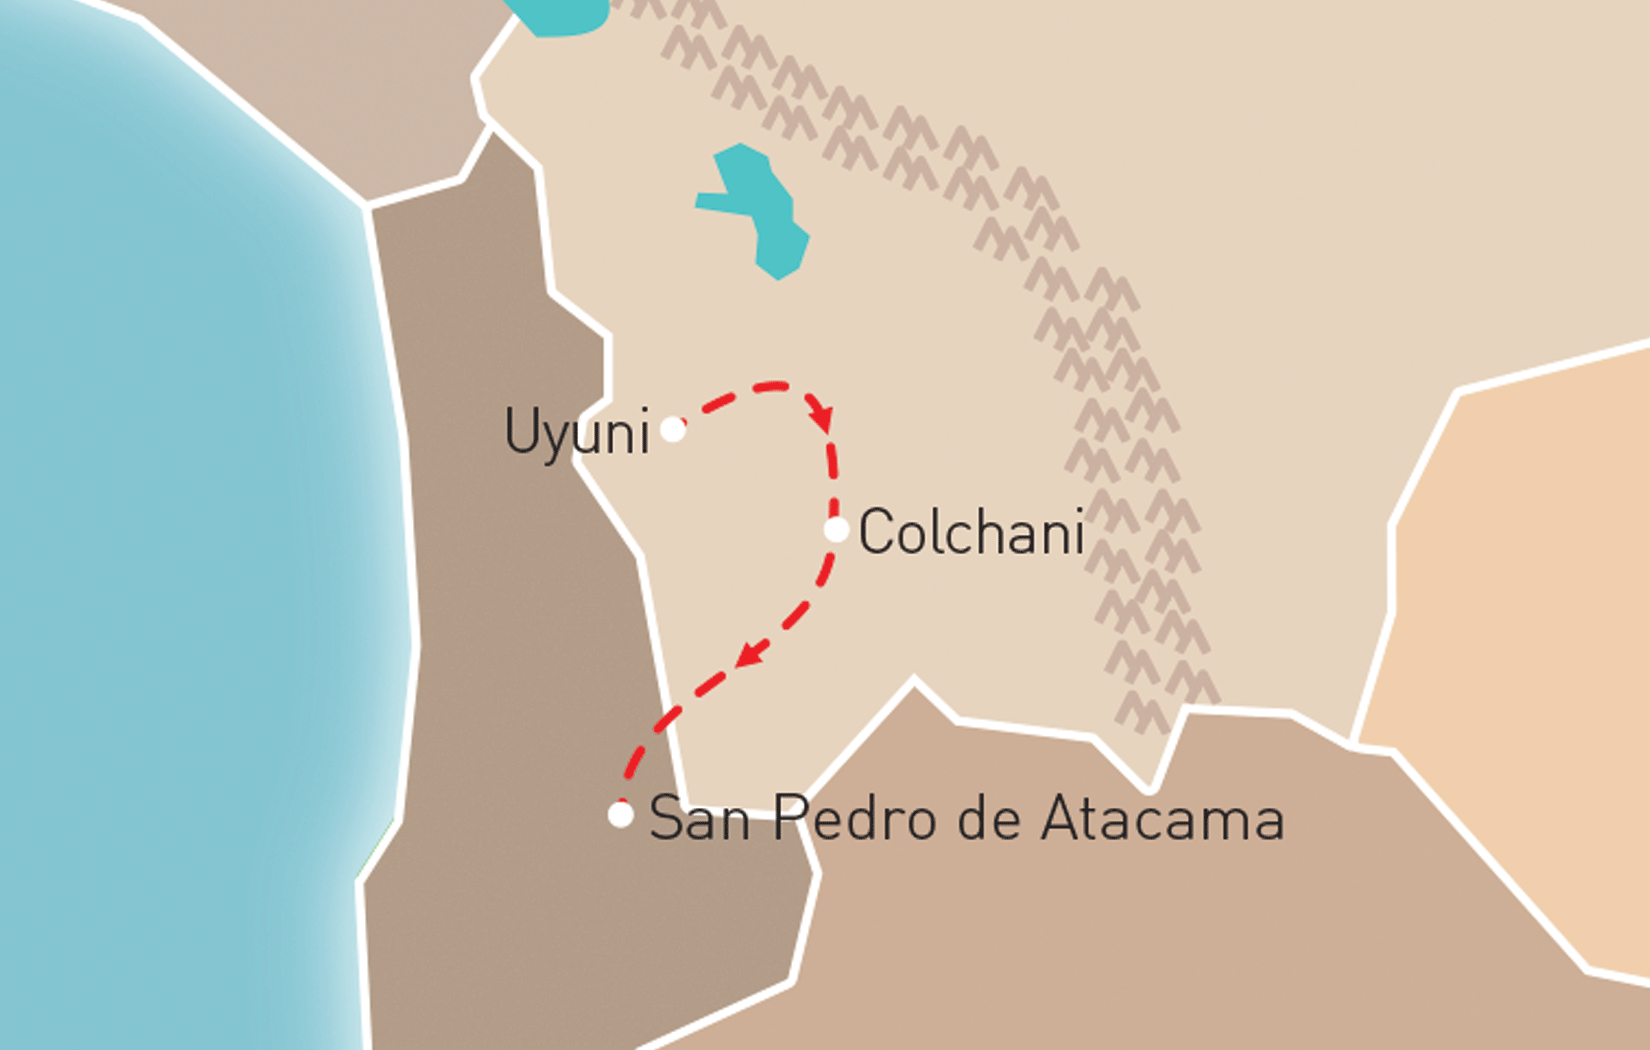 From Uyuni to San Pedro de Atacama Route Map